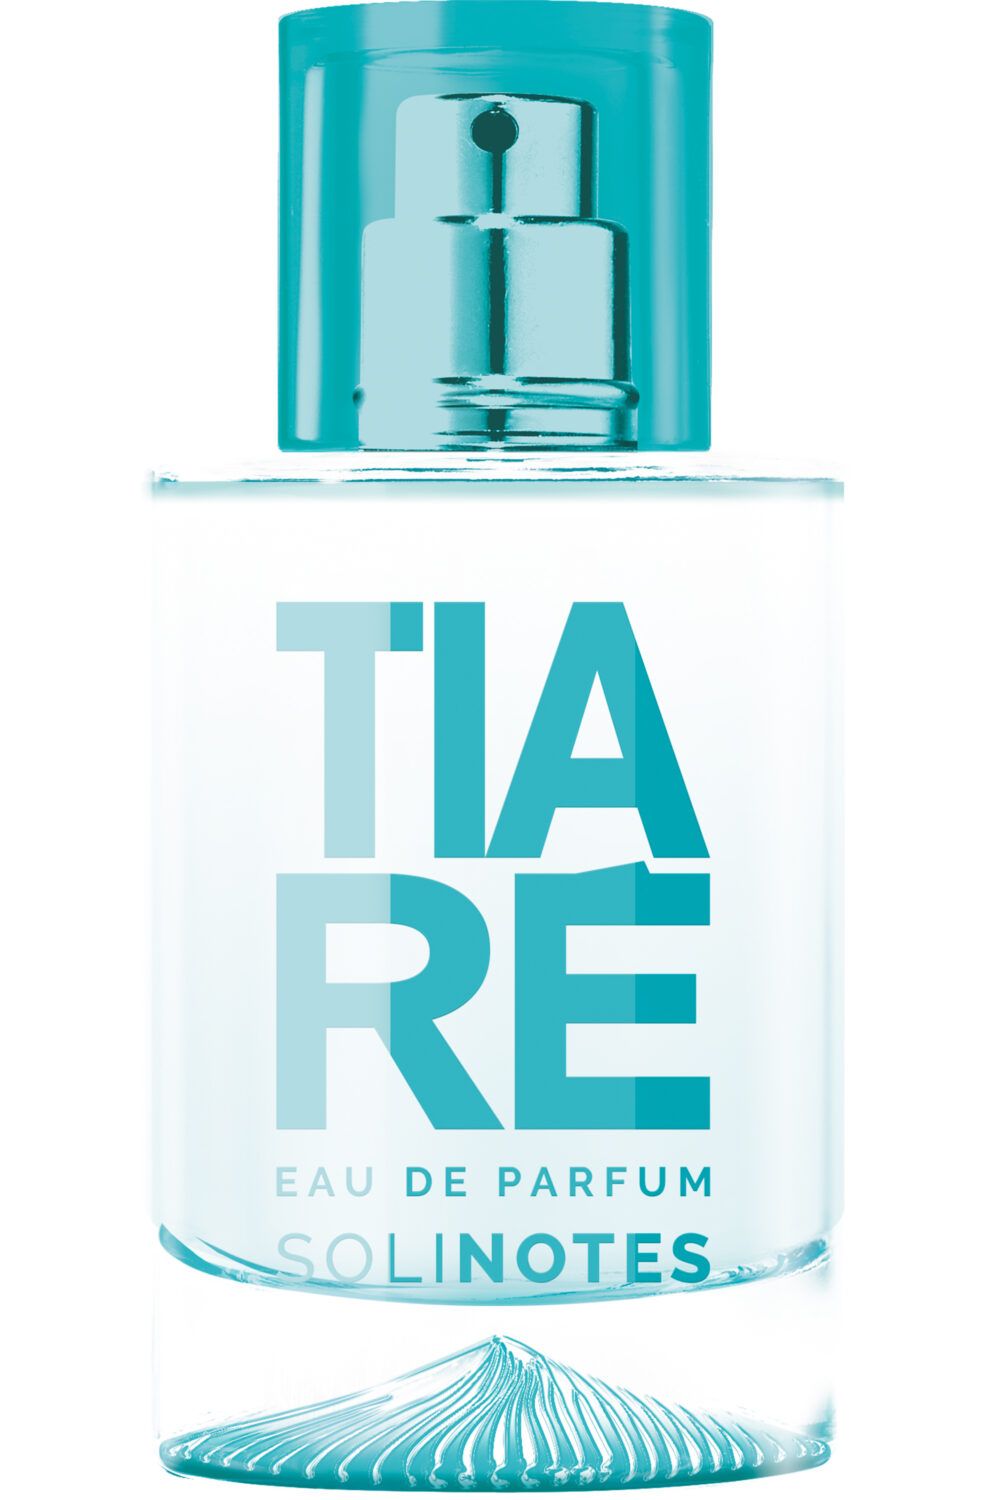 Solinotes - Eau de parfum Tiaré 50 ml